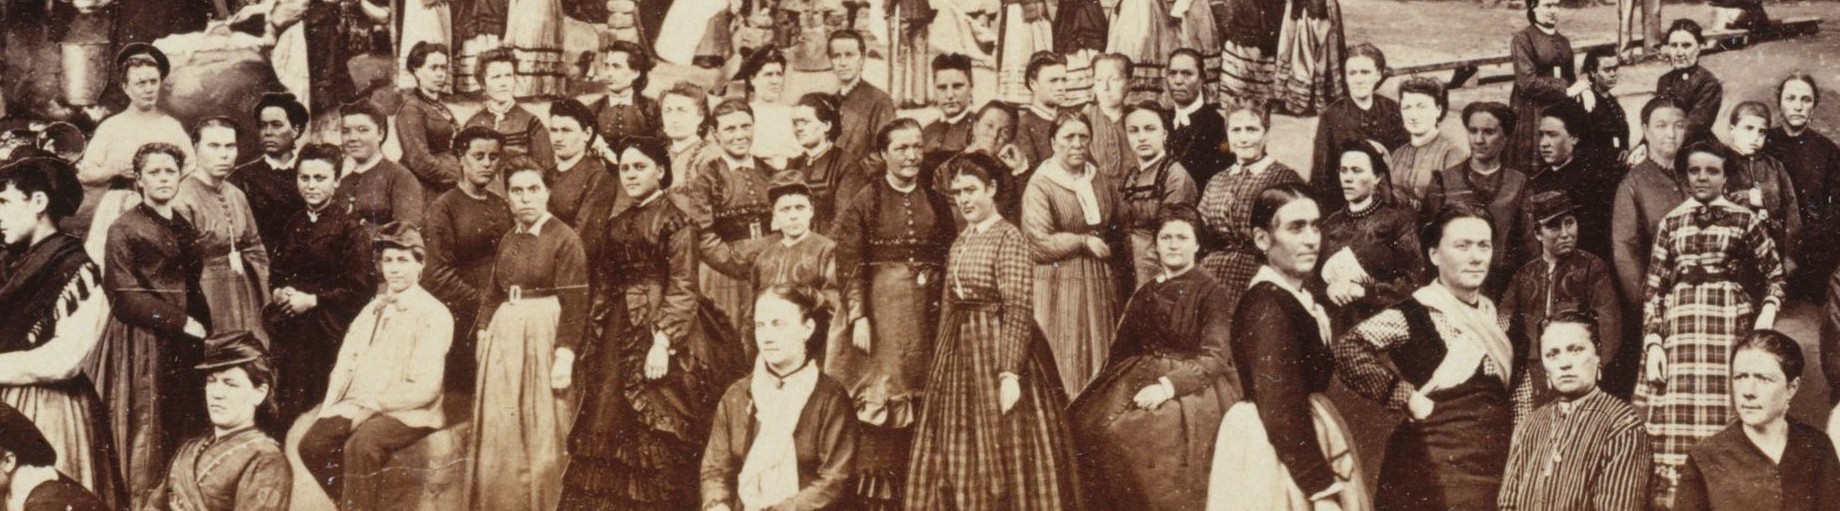 Femmes de la Commune de Paris (détail photo montage Prison des Chantiers de Appert)